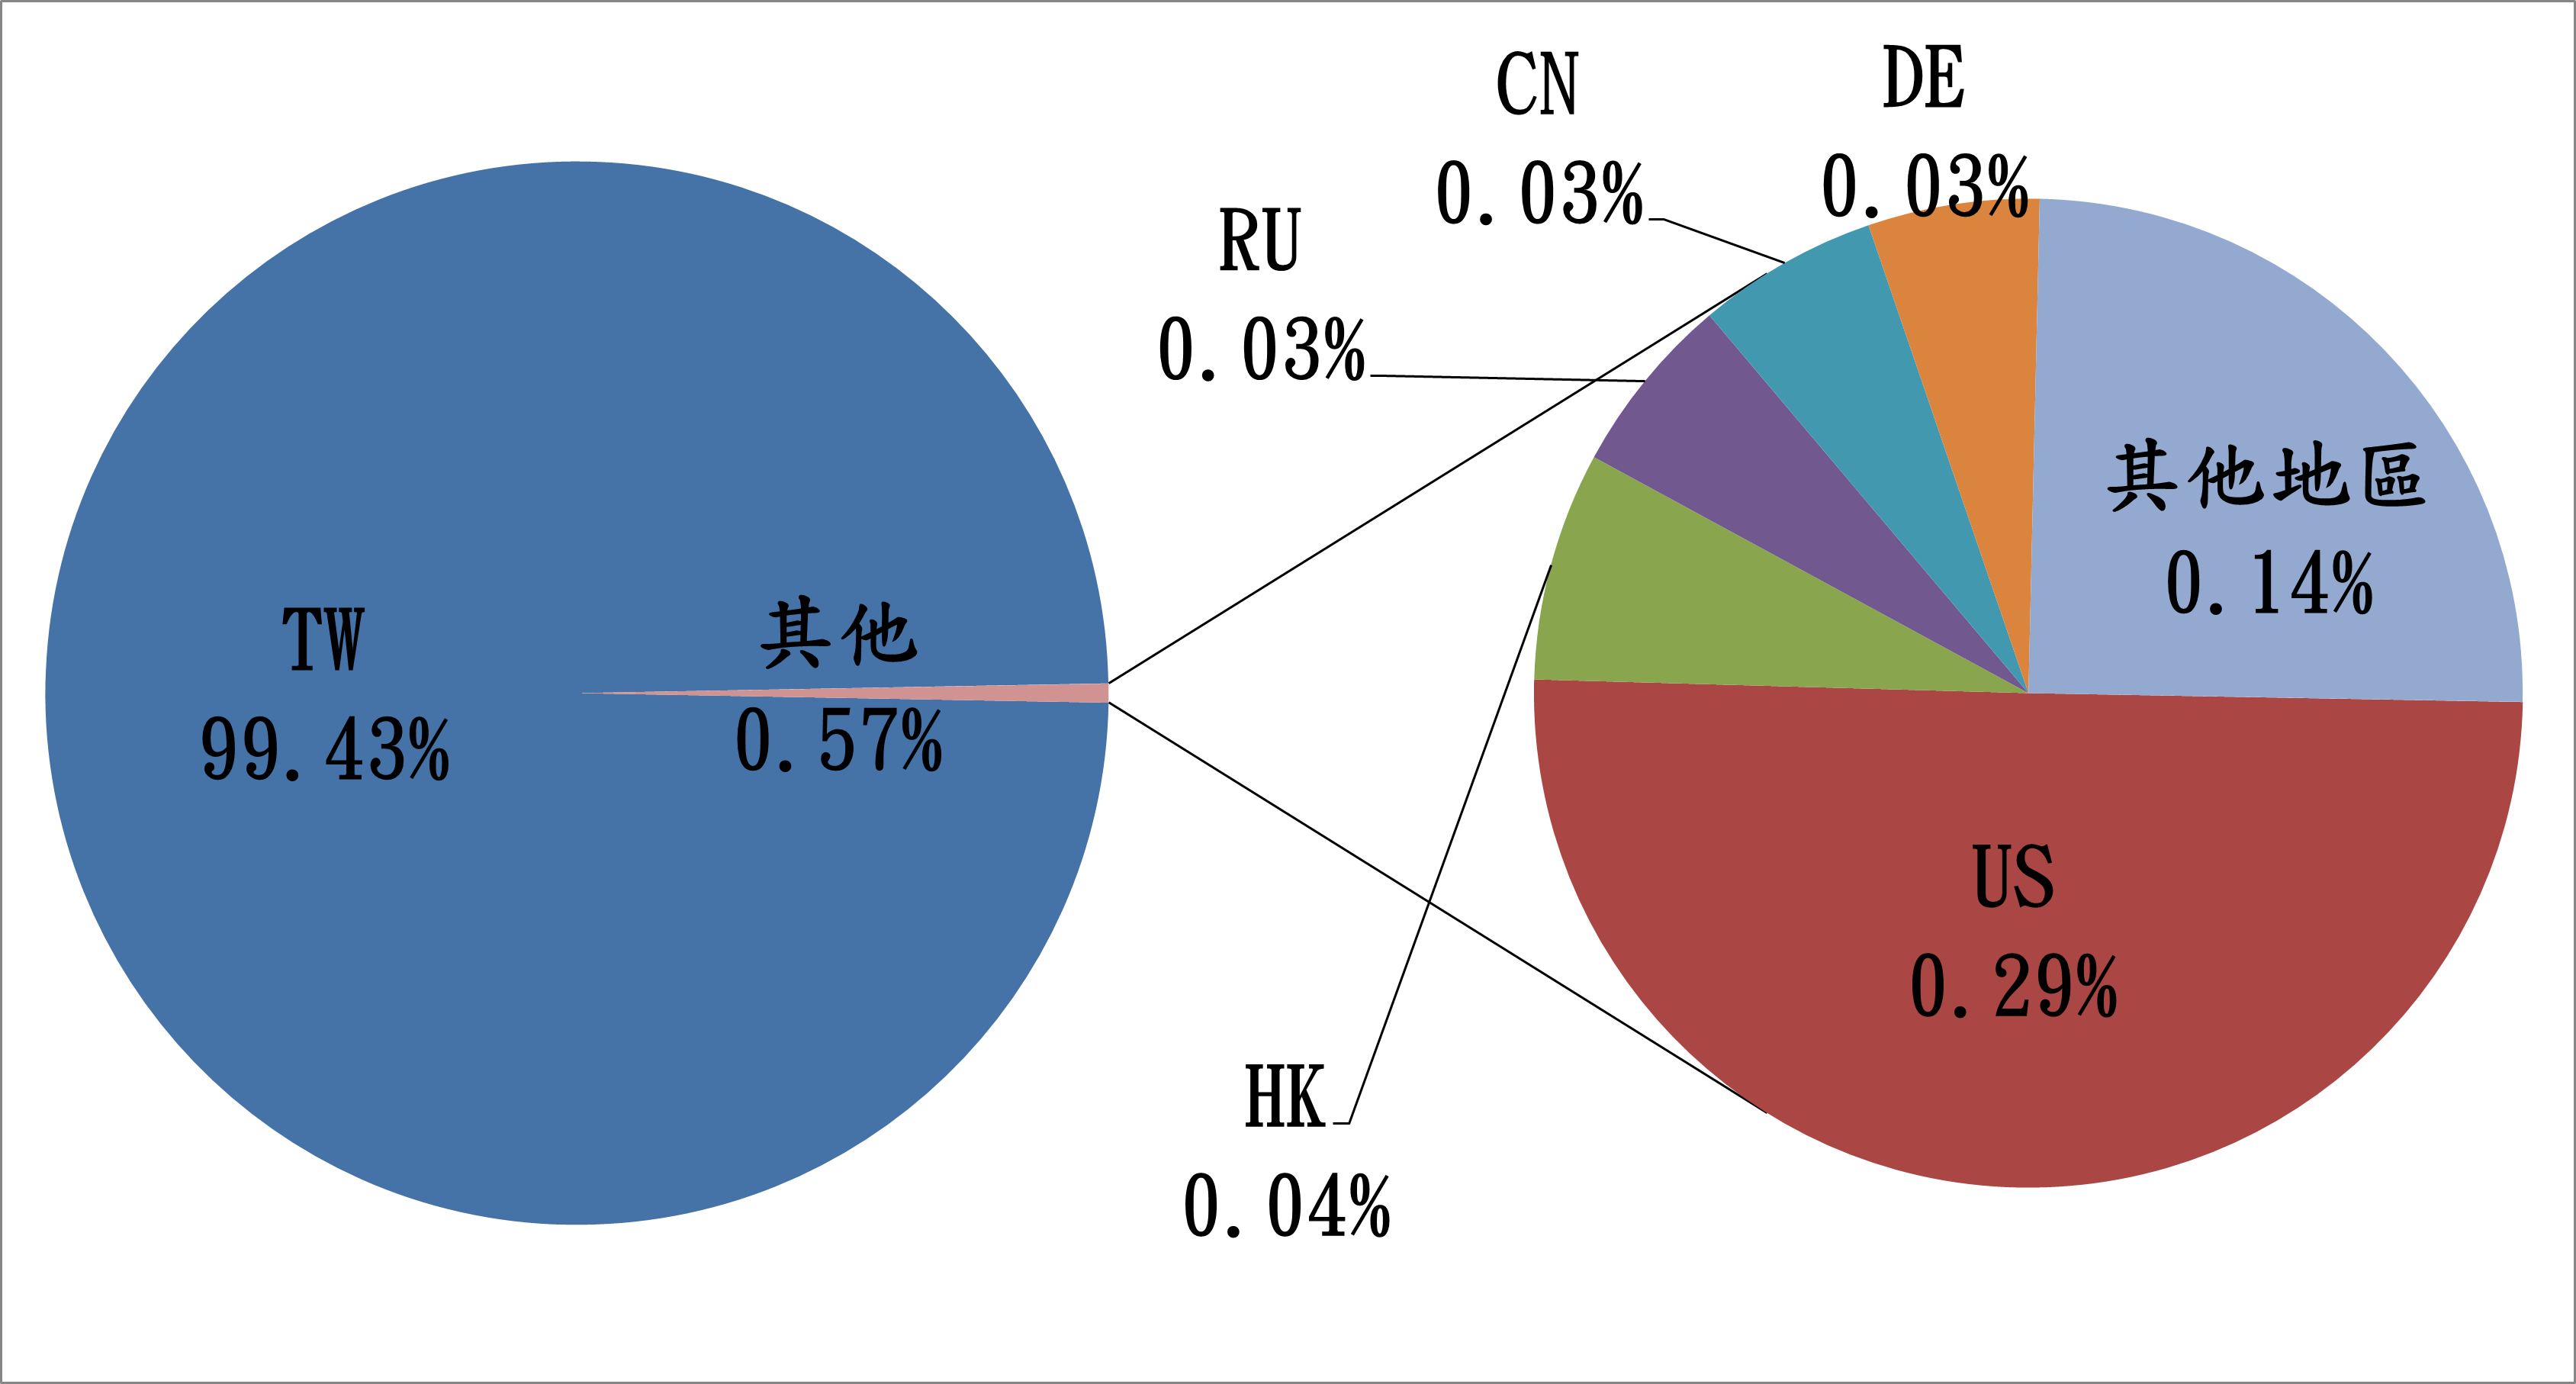 TW99.43% 其他0.57% DE0.03% CN0.03% RU0.03% HK0.04% US0.29% 其他地區0.14%